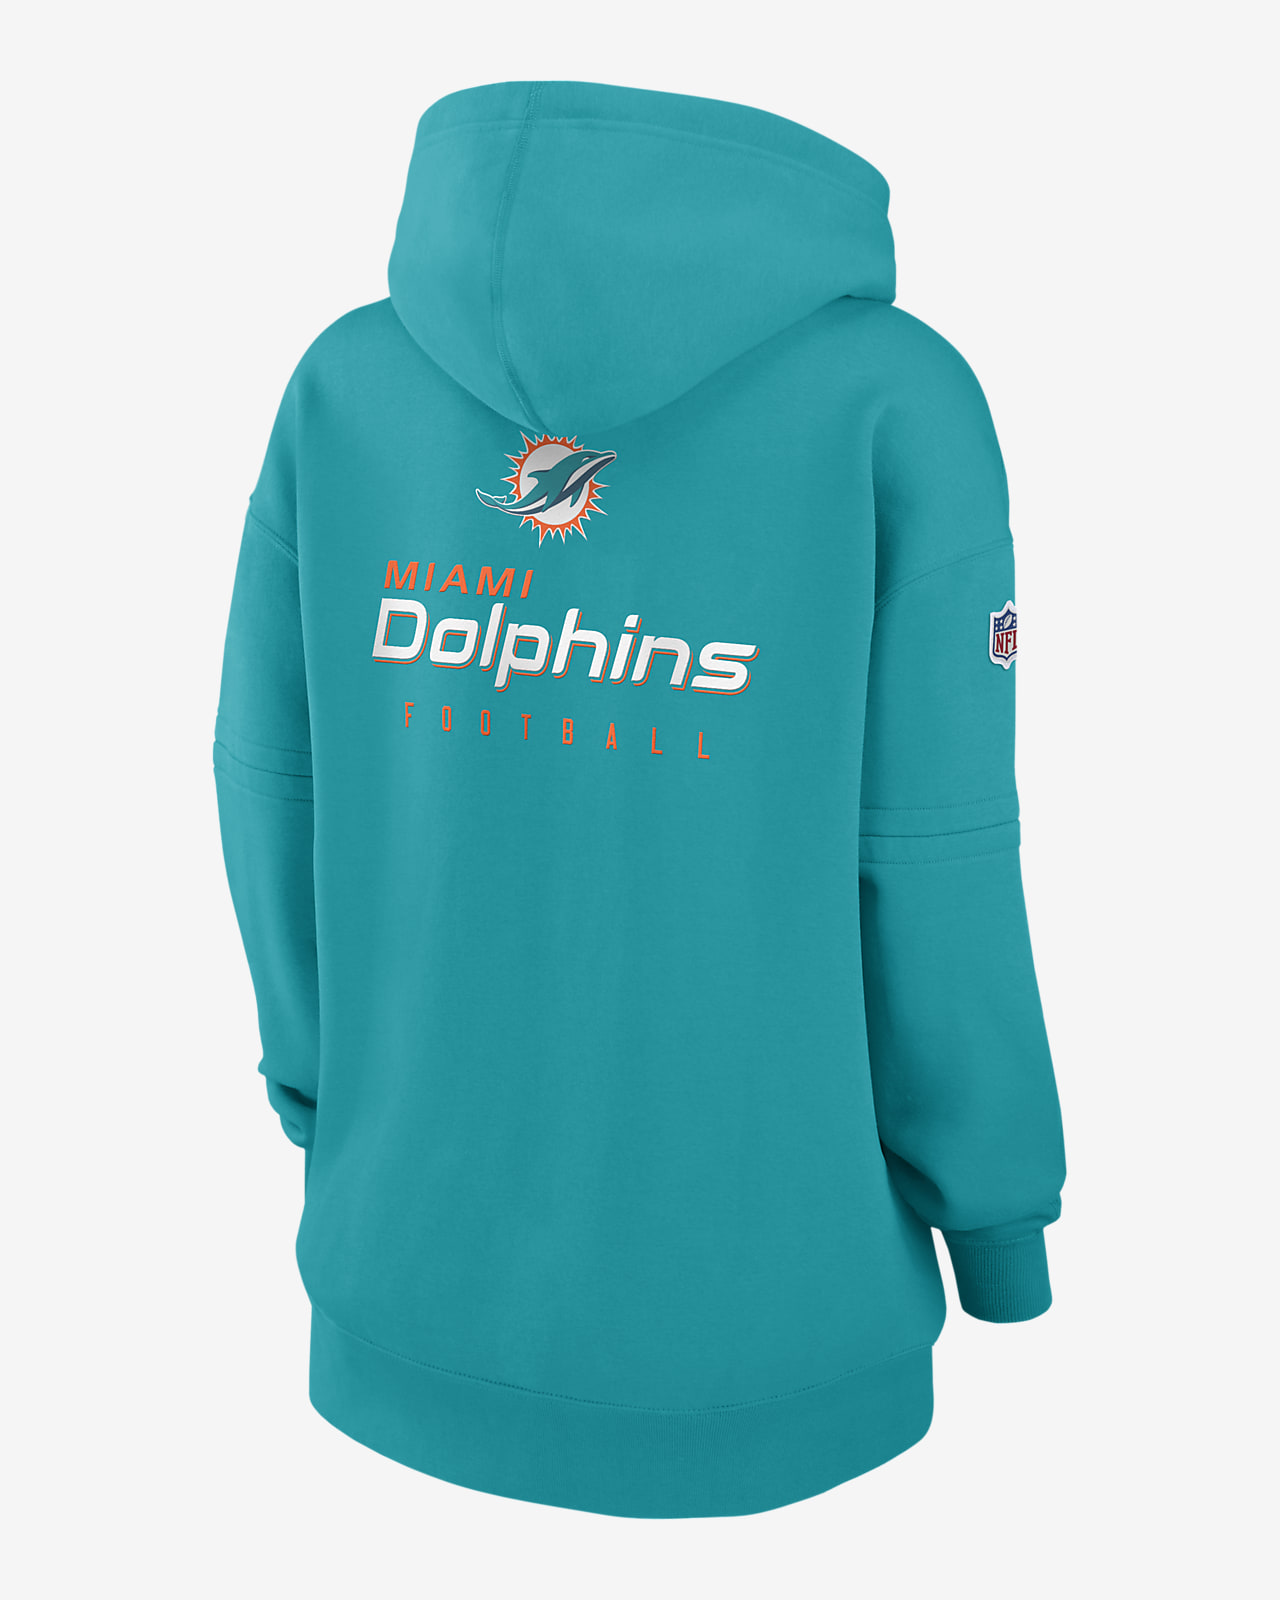 dolphins nike hoodie